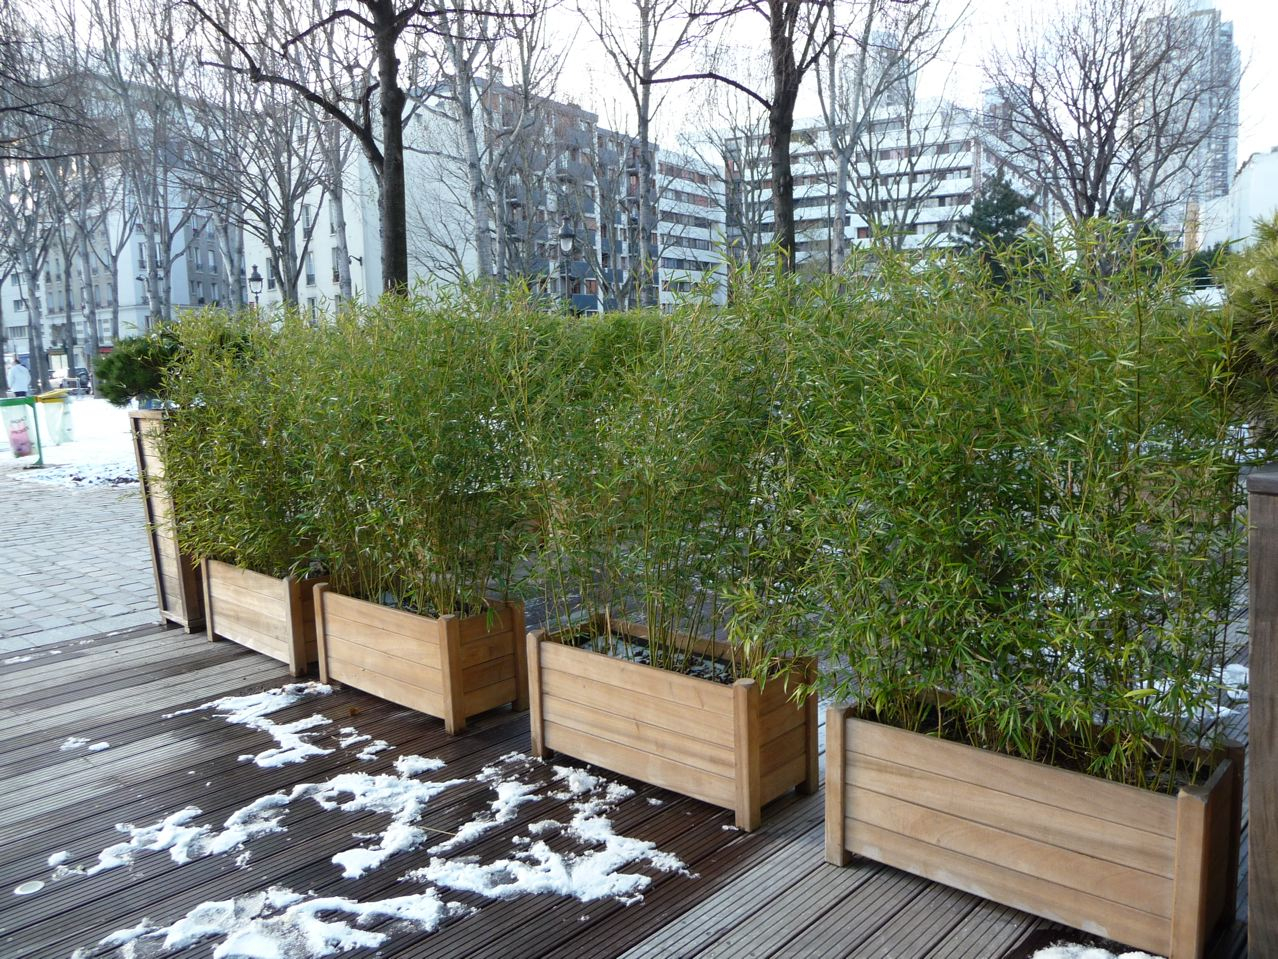 Cuisine: Jardiniã¨re De Bambous Pendant La Mauvaise Saison ... destiné Déco Jardin Bambou